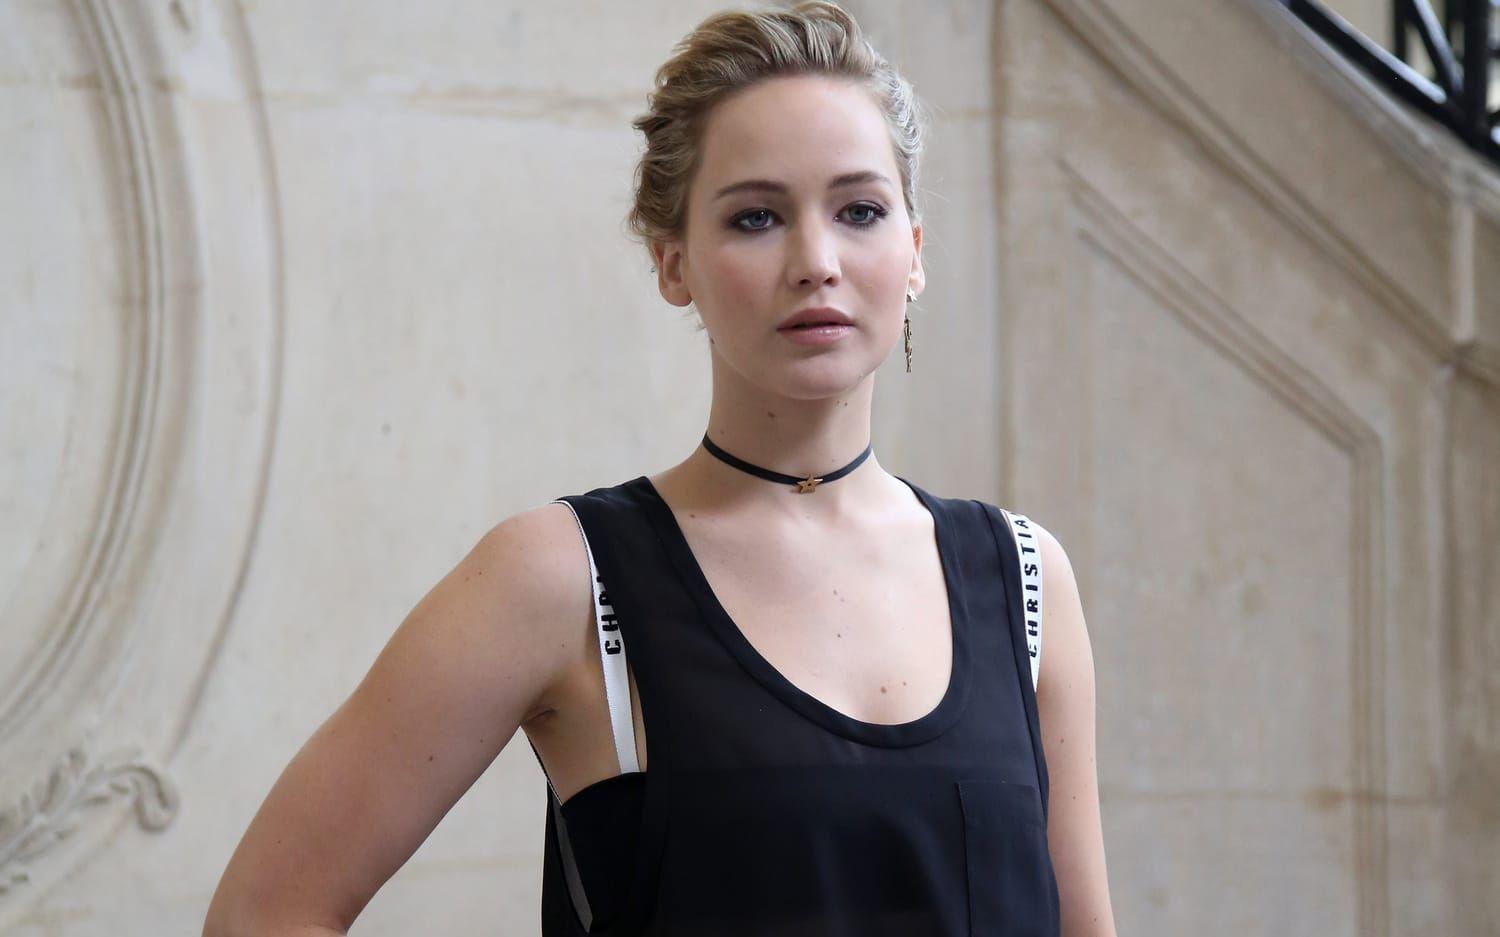 Föll med flit. Jennifer Lawrence föll med flit på Oscarsgalan för att förstärka sin image som ”gulligt klumpig”. Svårt att bevisa men också motbevisa. Bild: Scanpix.